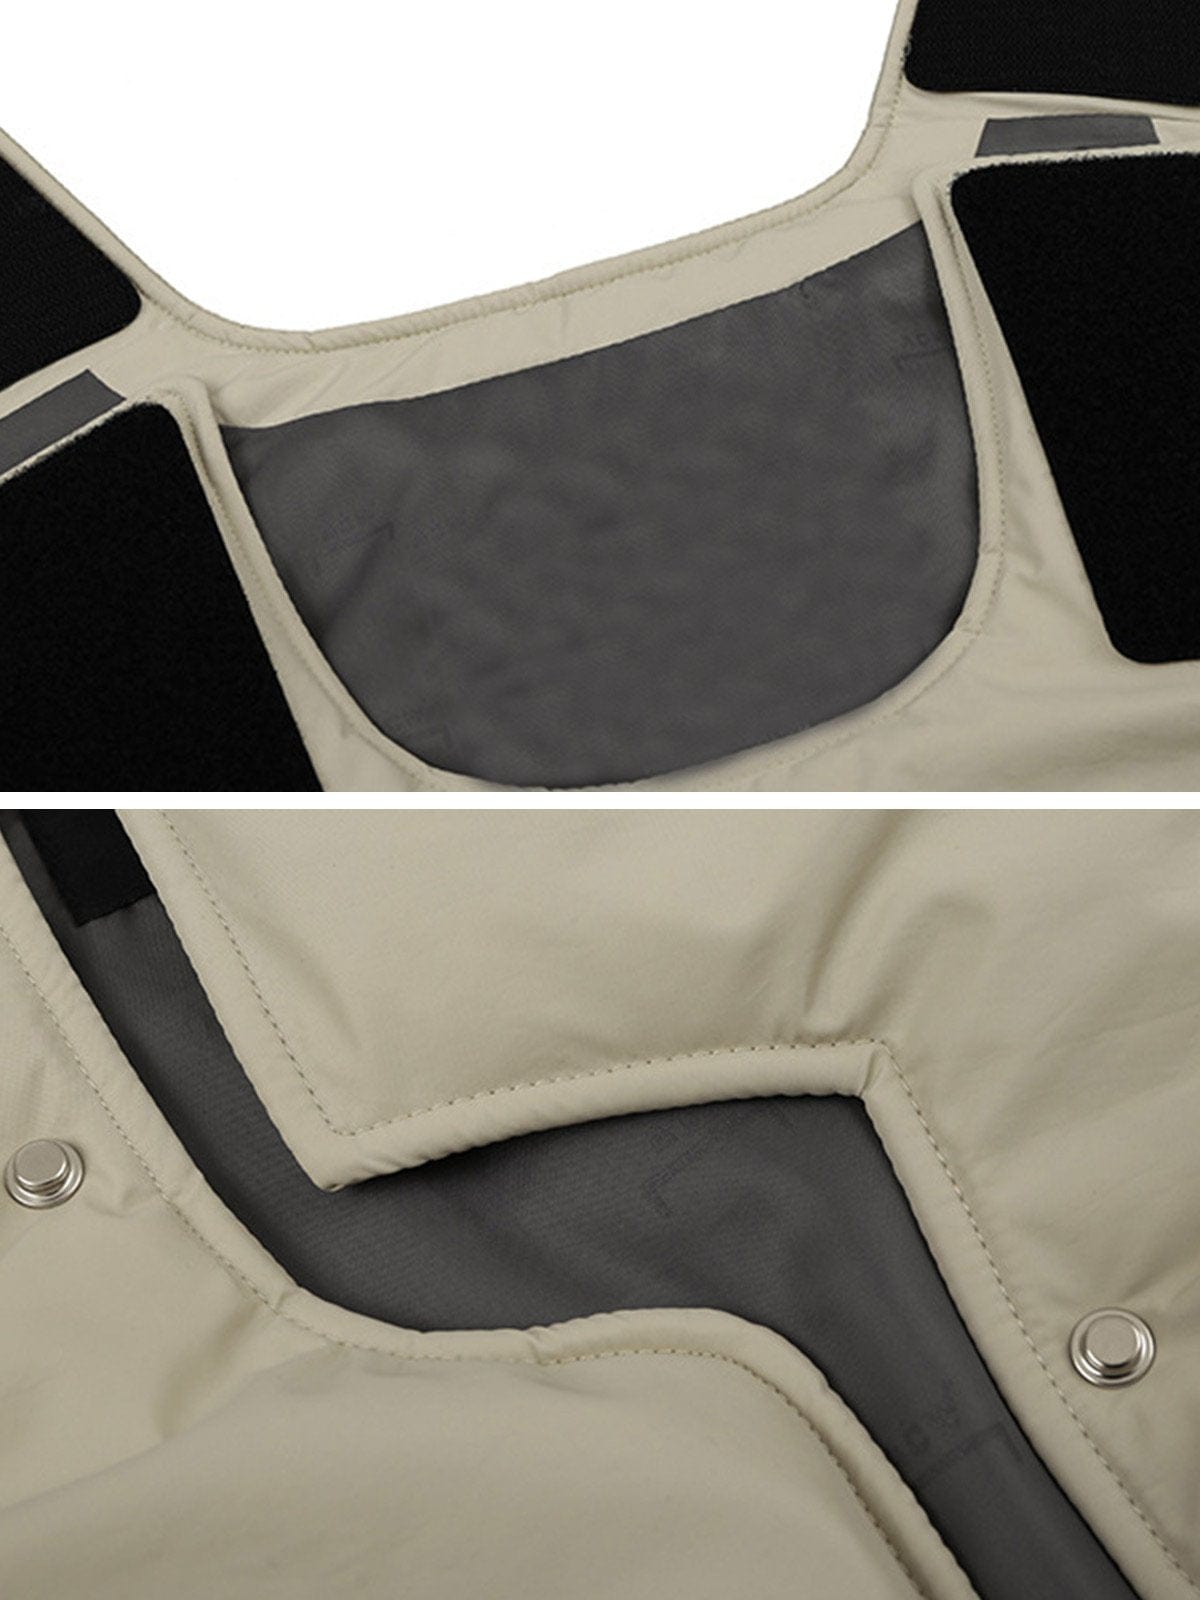 NEV Deconstruct Hidden Buckle Vest